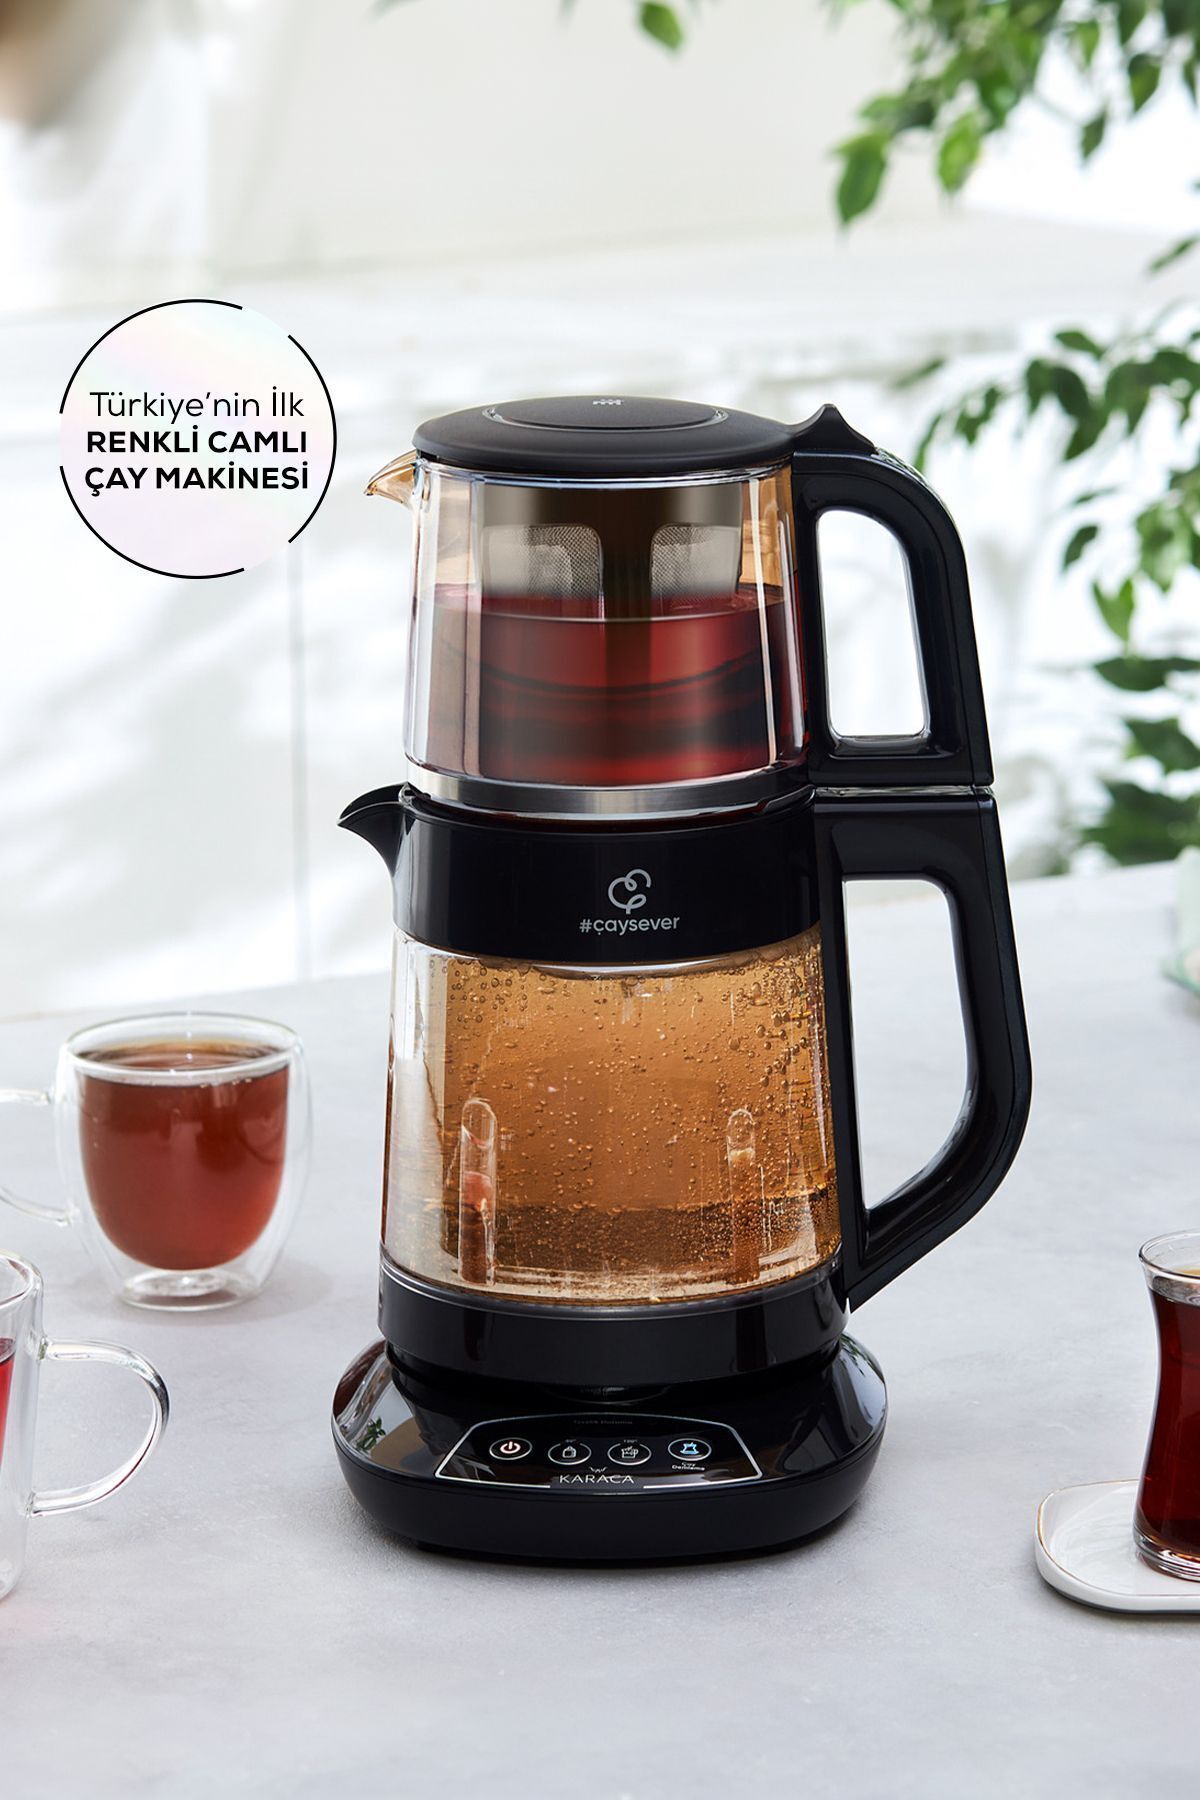 Karaca Çaysever 3 in 1 Konuşan Renkli Camlı Çay Makinesi Agate